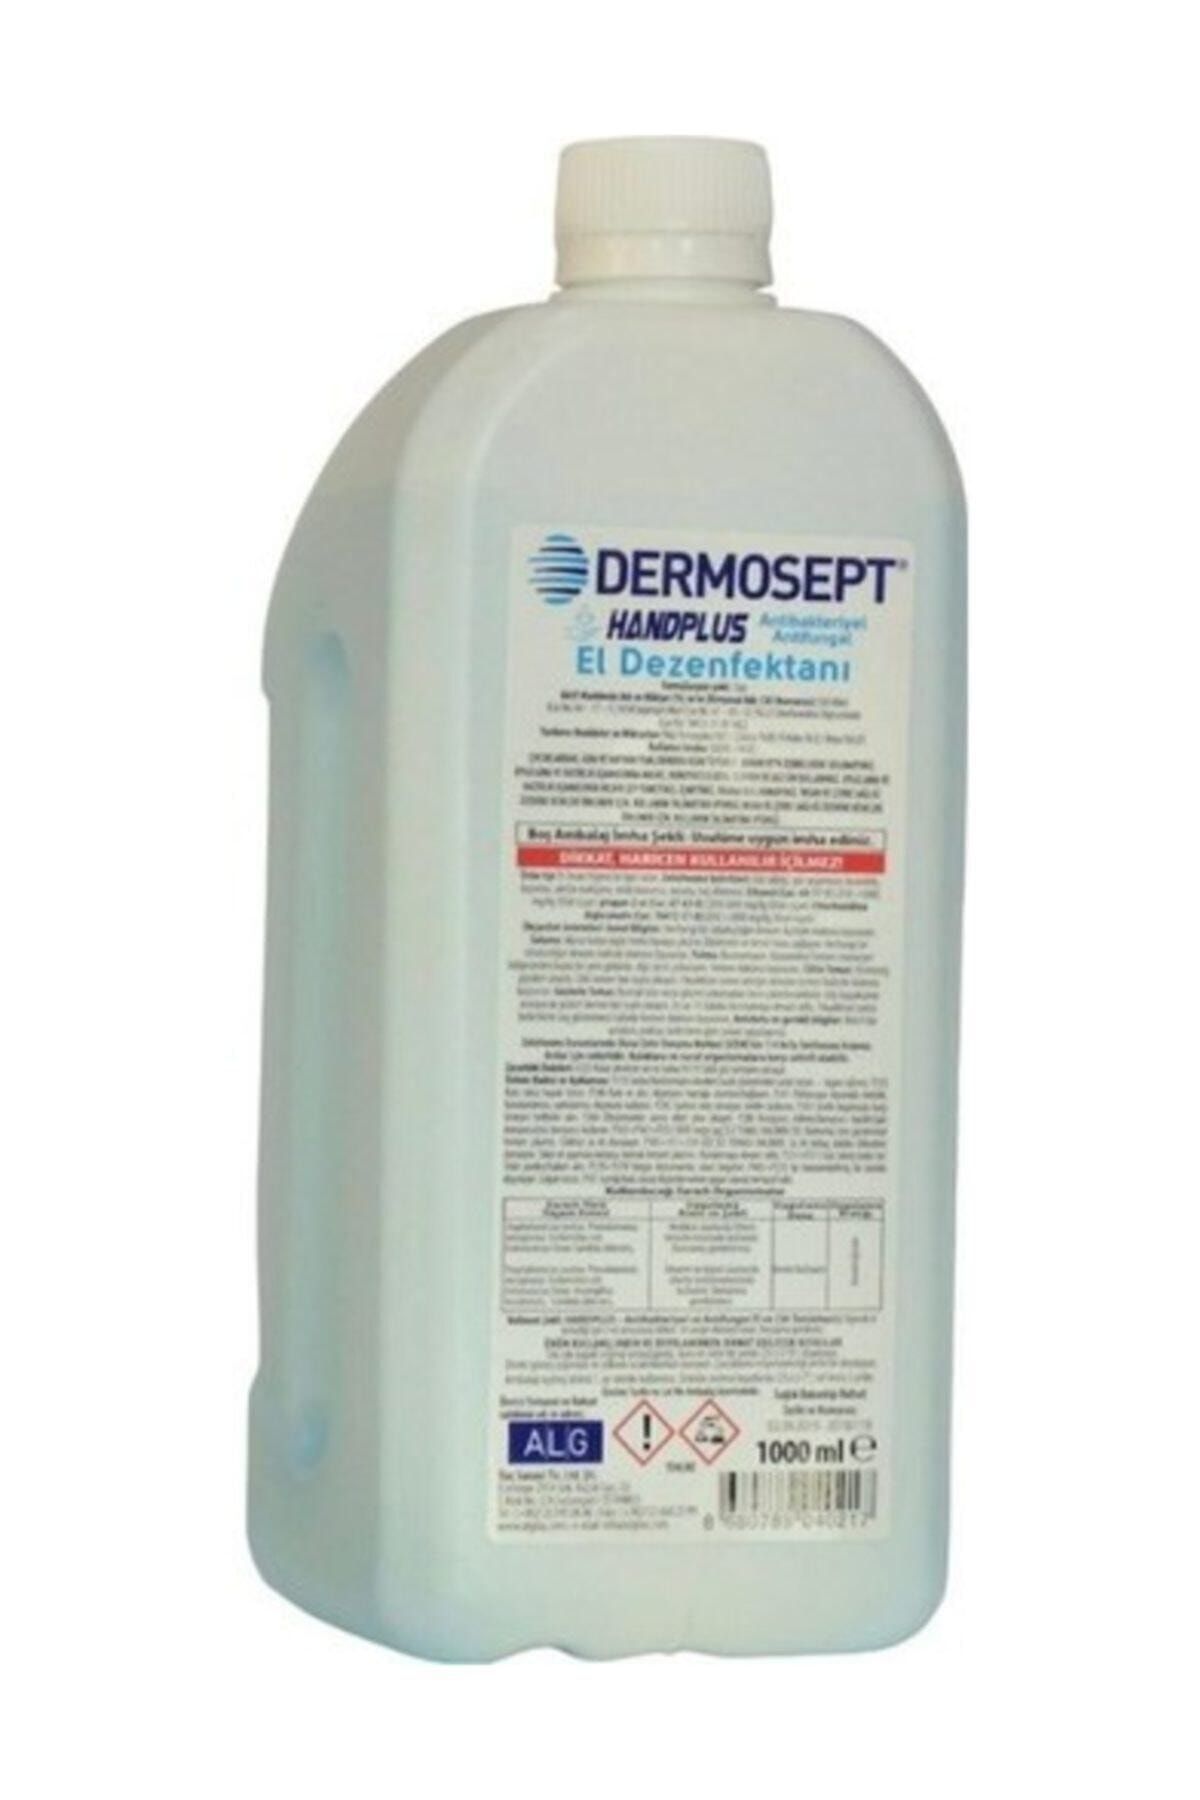 HAMİDİYE AMBALAJ Dermosept Handplus El Dezenfektanı 1000 ml